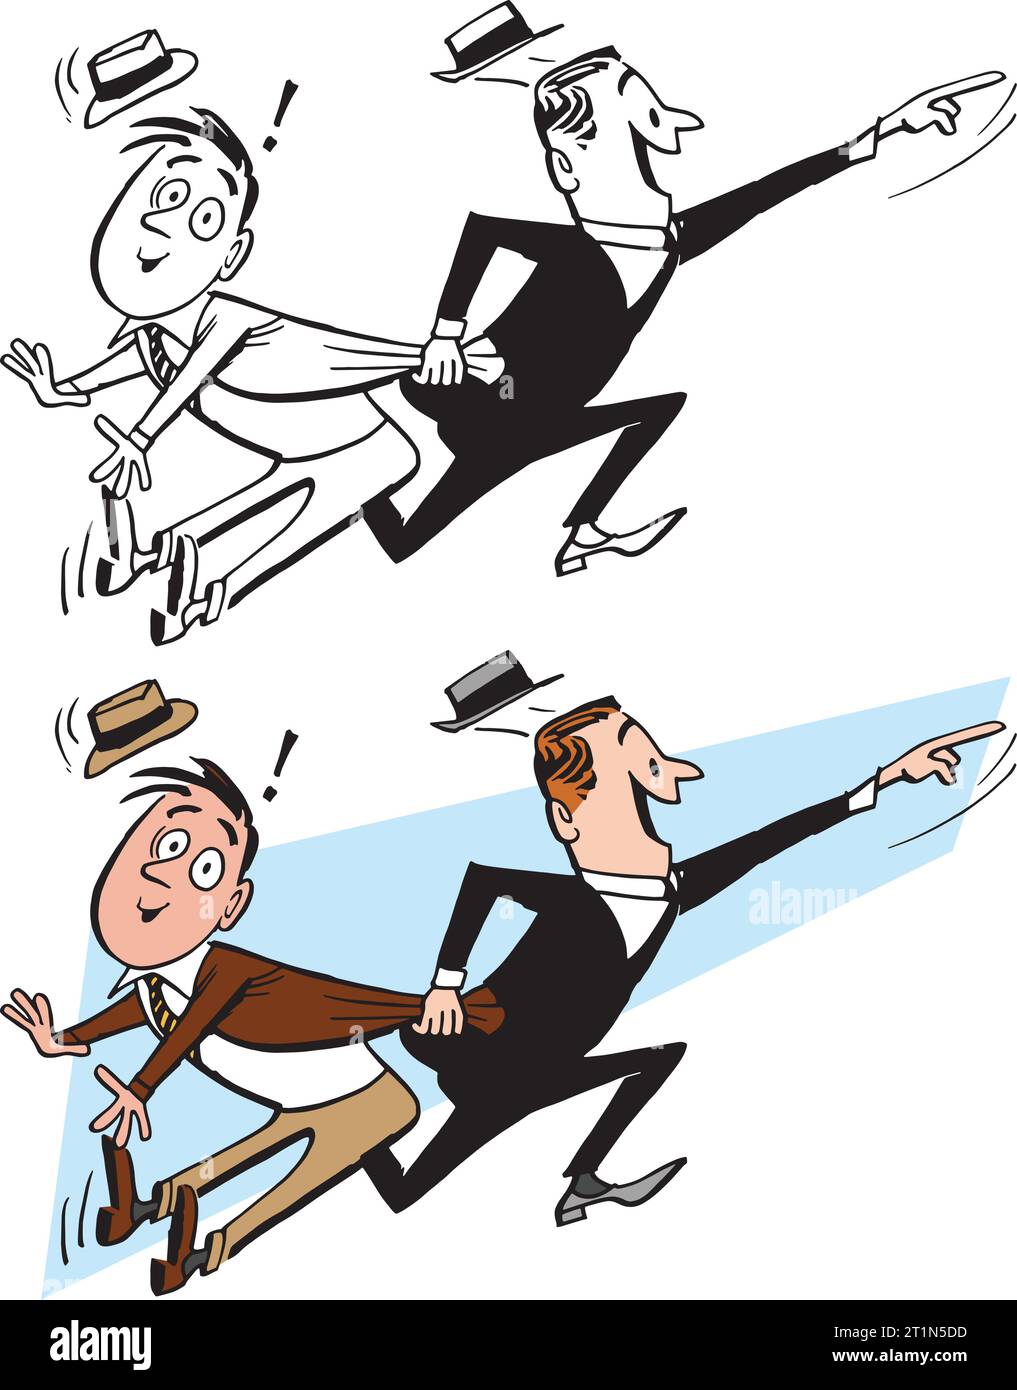 Un dessin animé rétro vintage de deux hommes d'affaires se précipitant à une réunion importante. Illustration de Vecteur